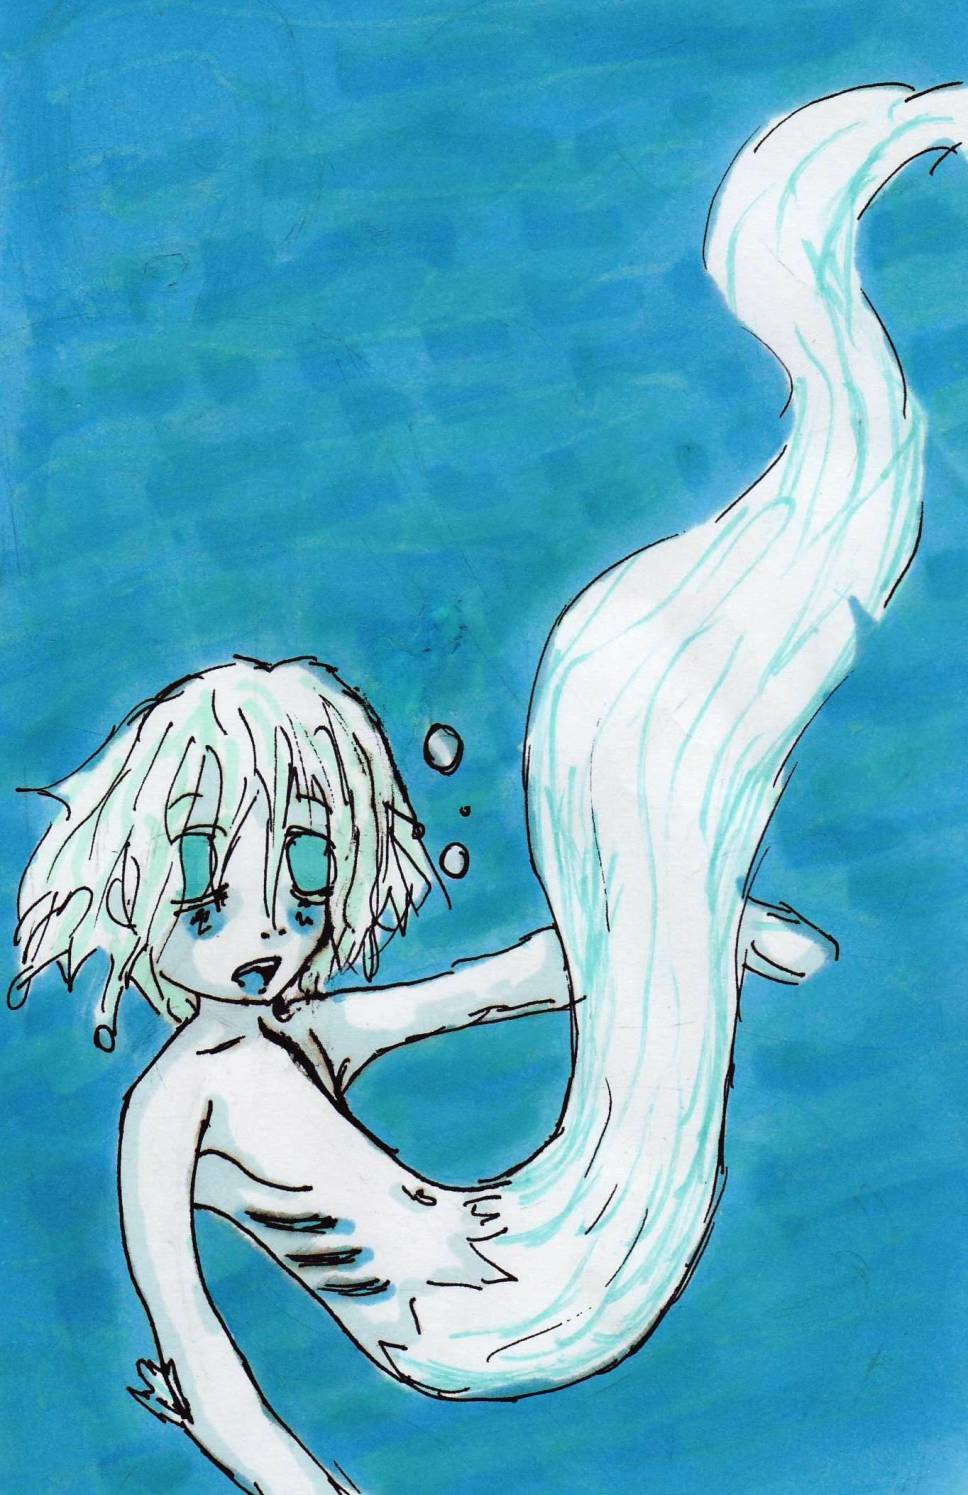 Aqua boy by titilily